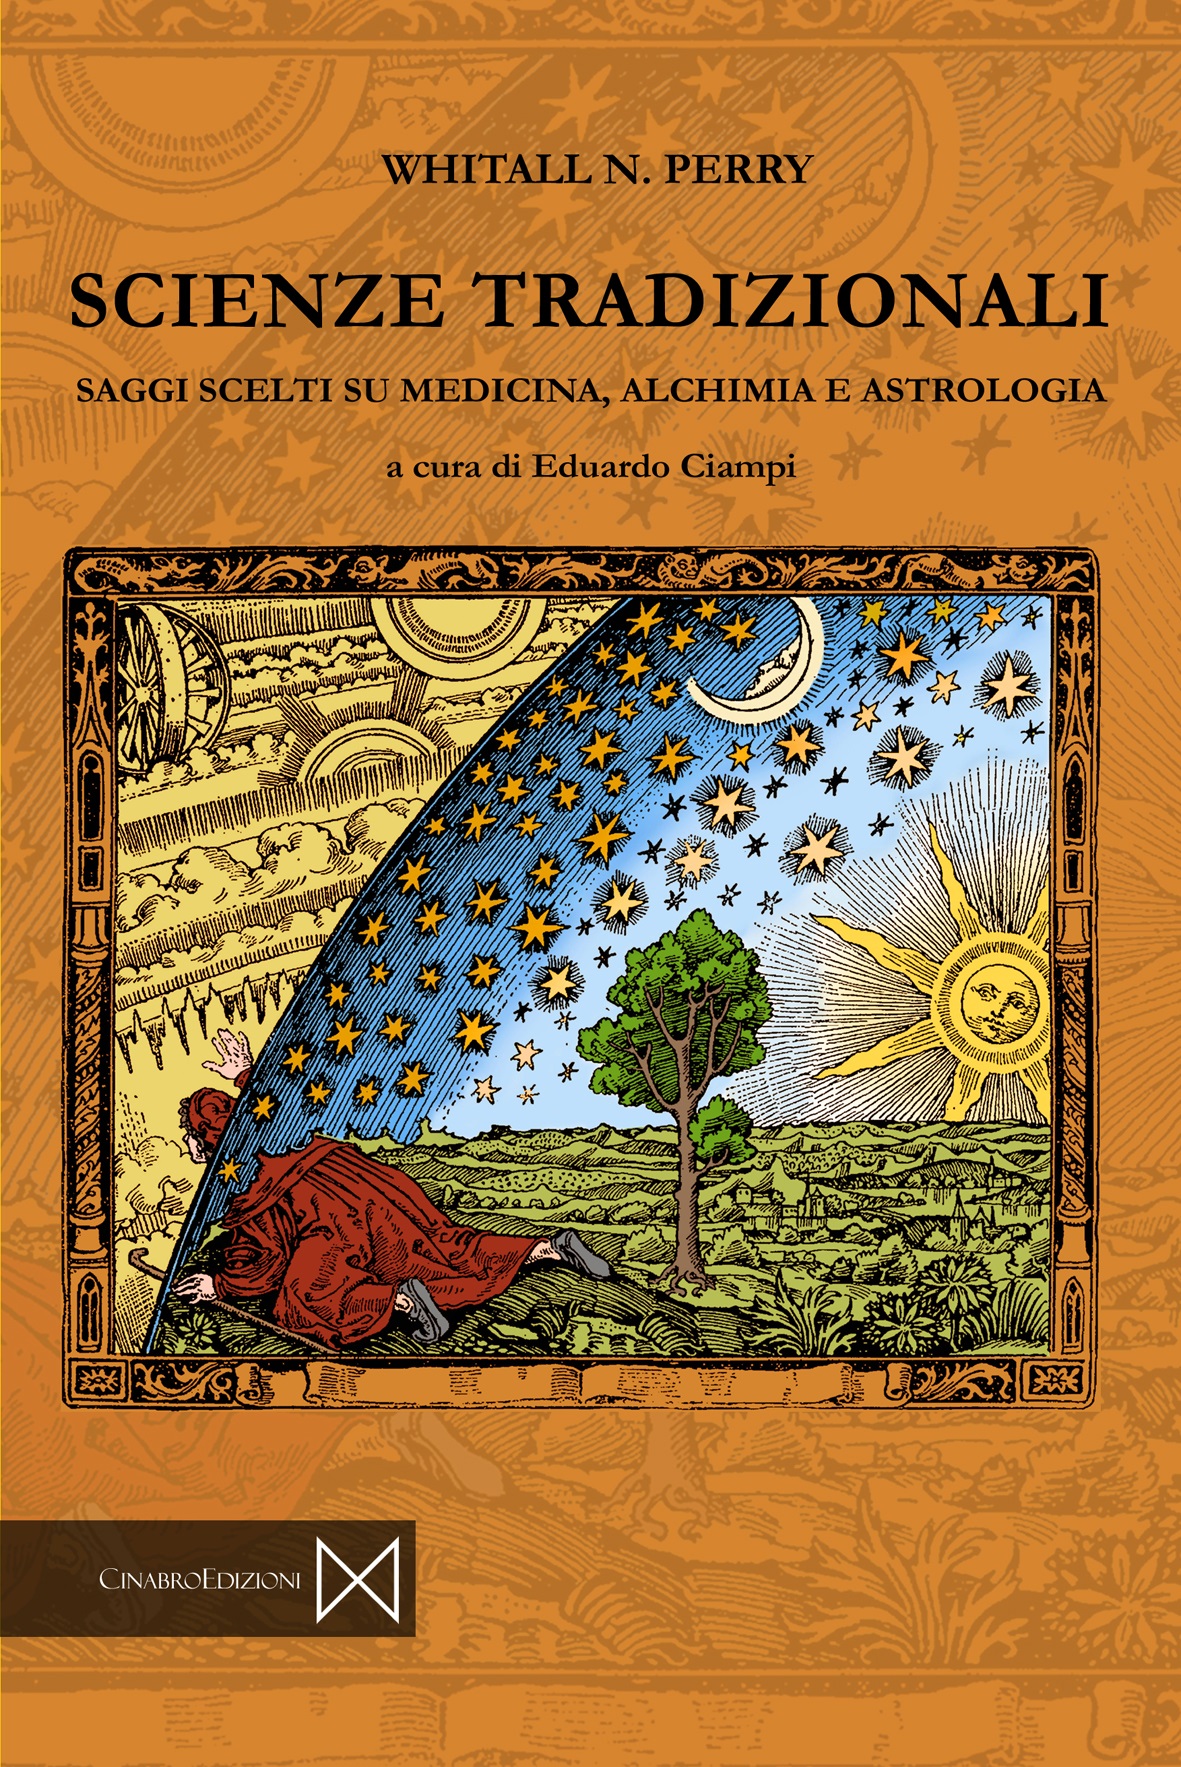 Tra scienza e conoscenza tradizionale: gli studi di Whitall Perry pubblicati da Cinabro